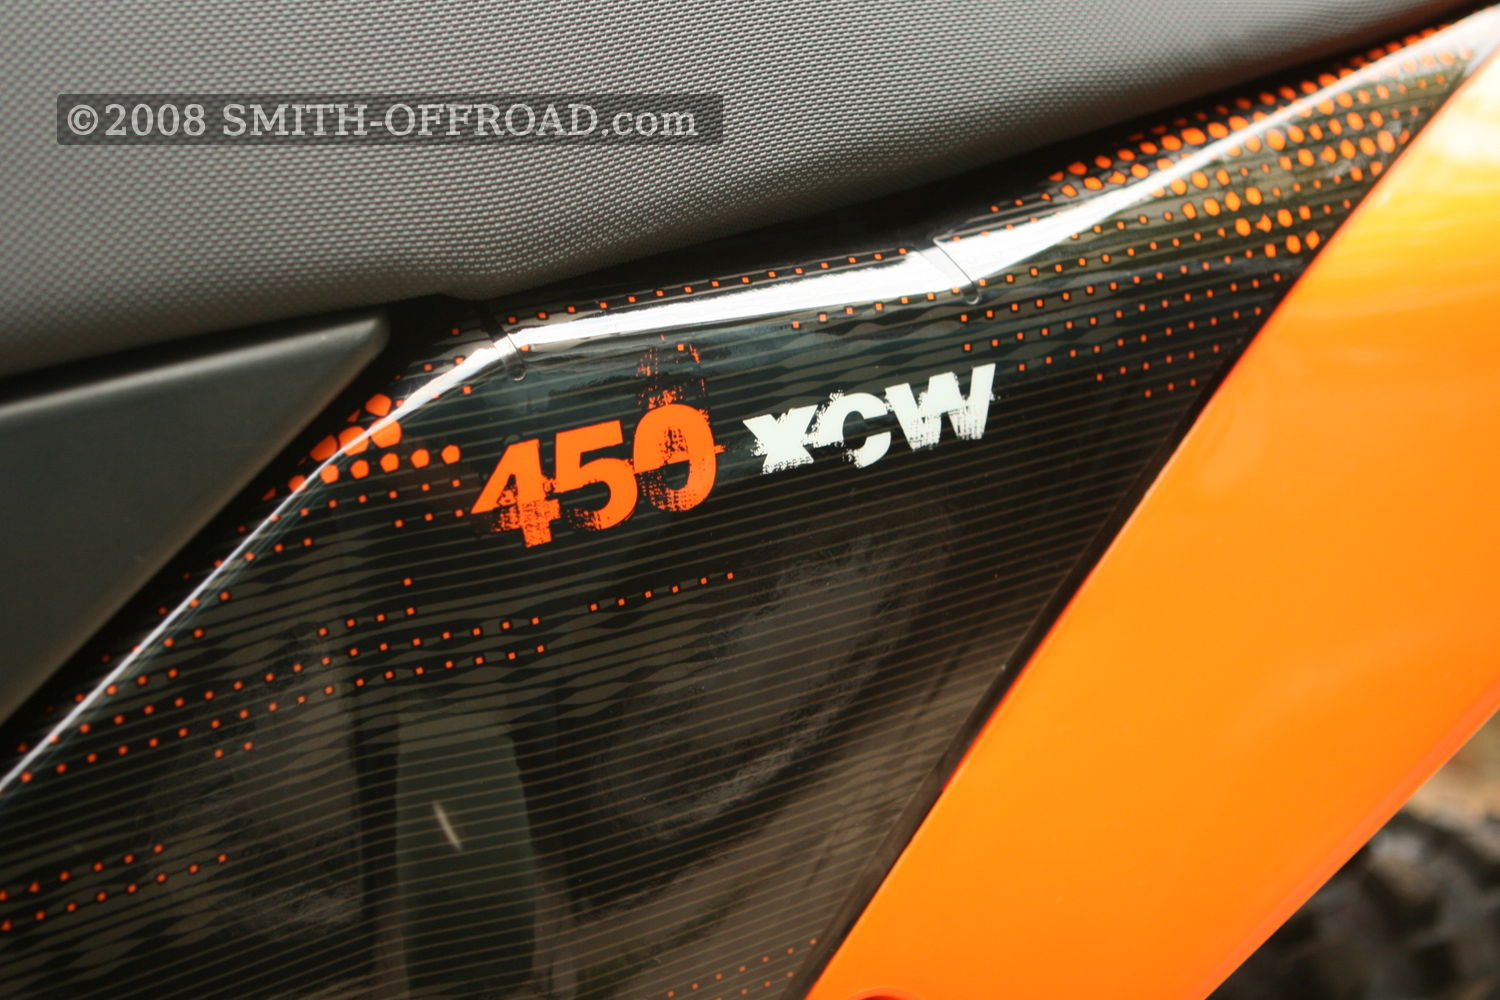 Brand Spankin' New 2009 KTM 450 XCW
, photo 